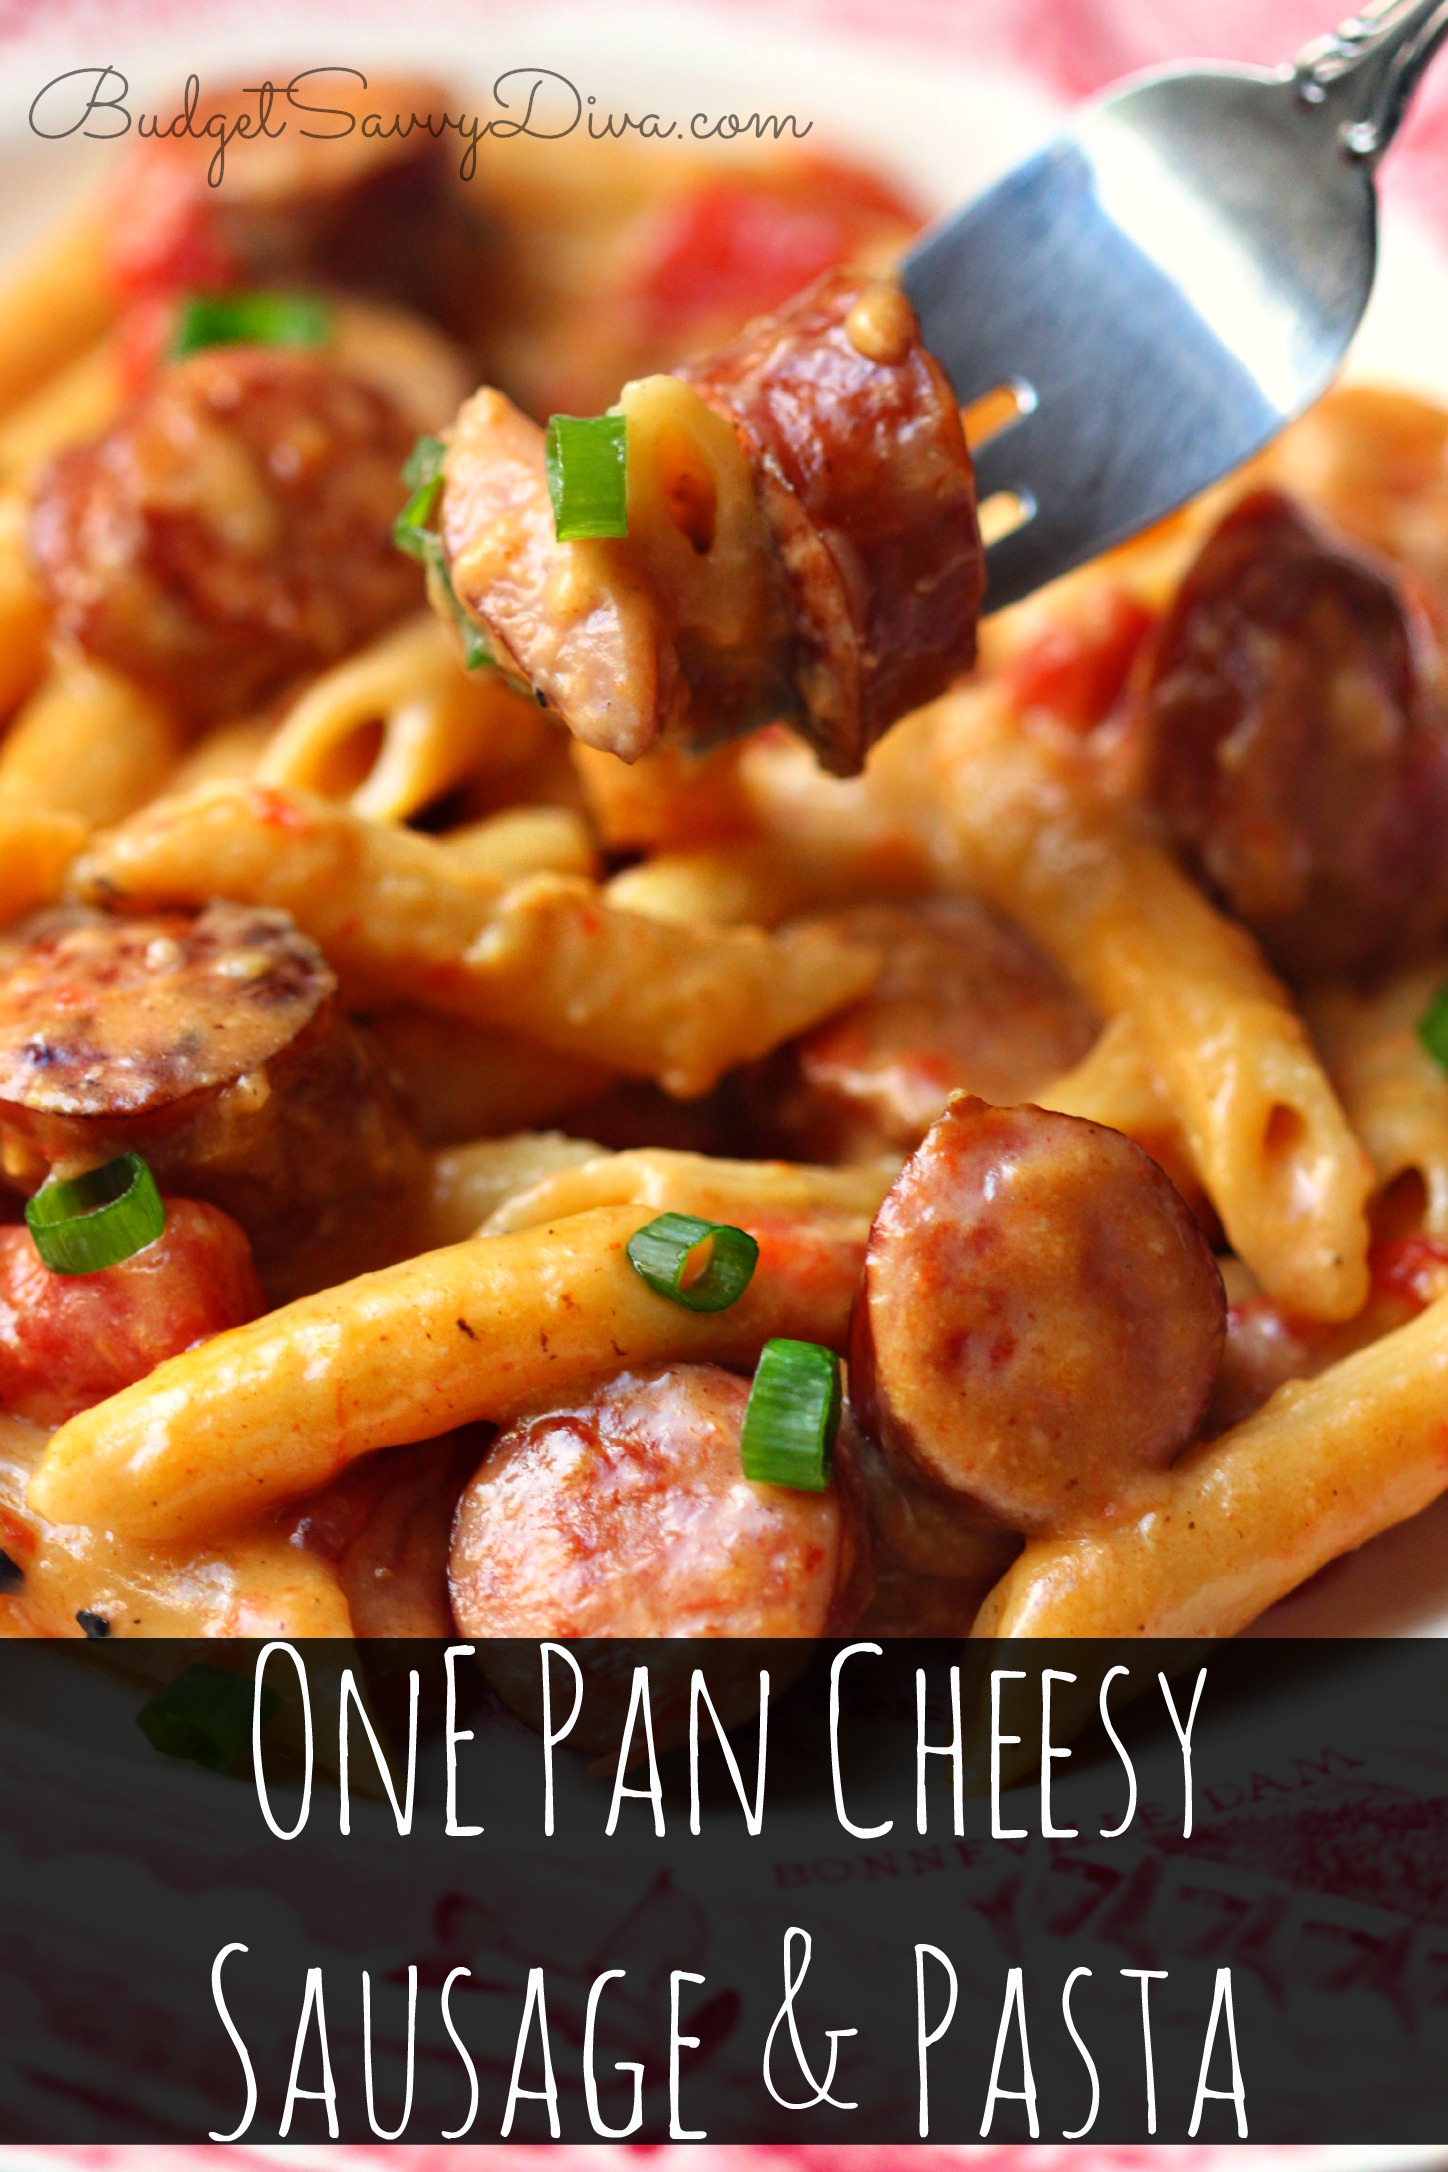 One Pan Cheesy Smoked Sausage & Pasta Recipe | Budget Savvy Diva